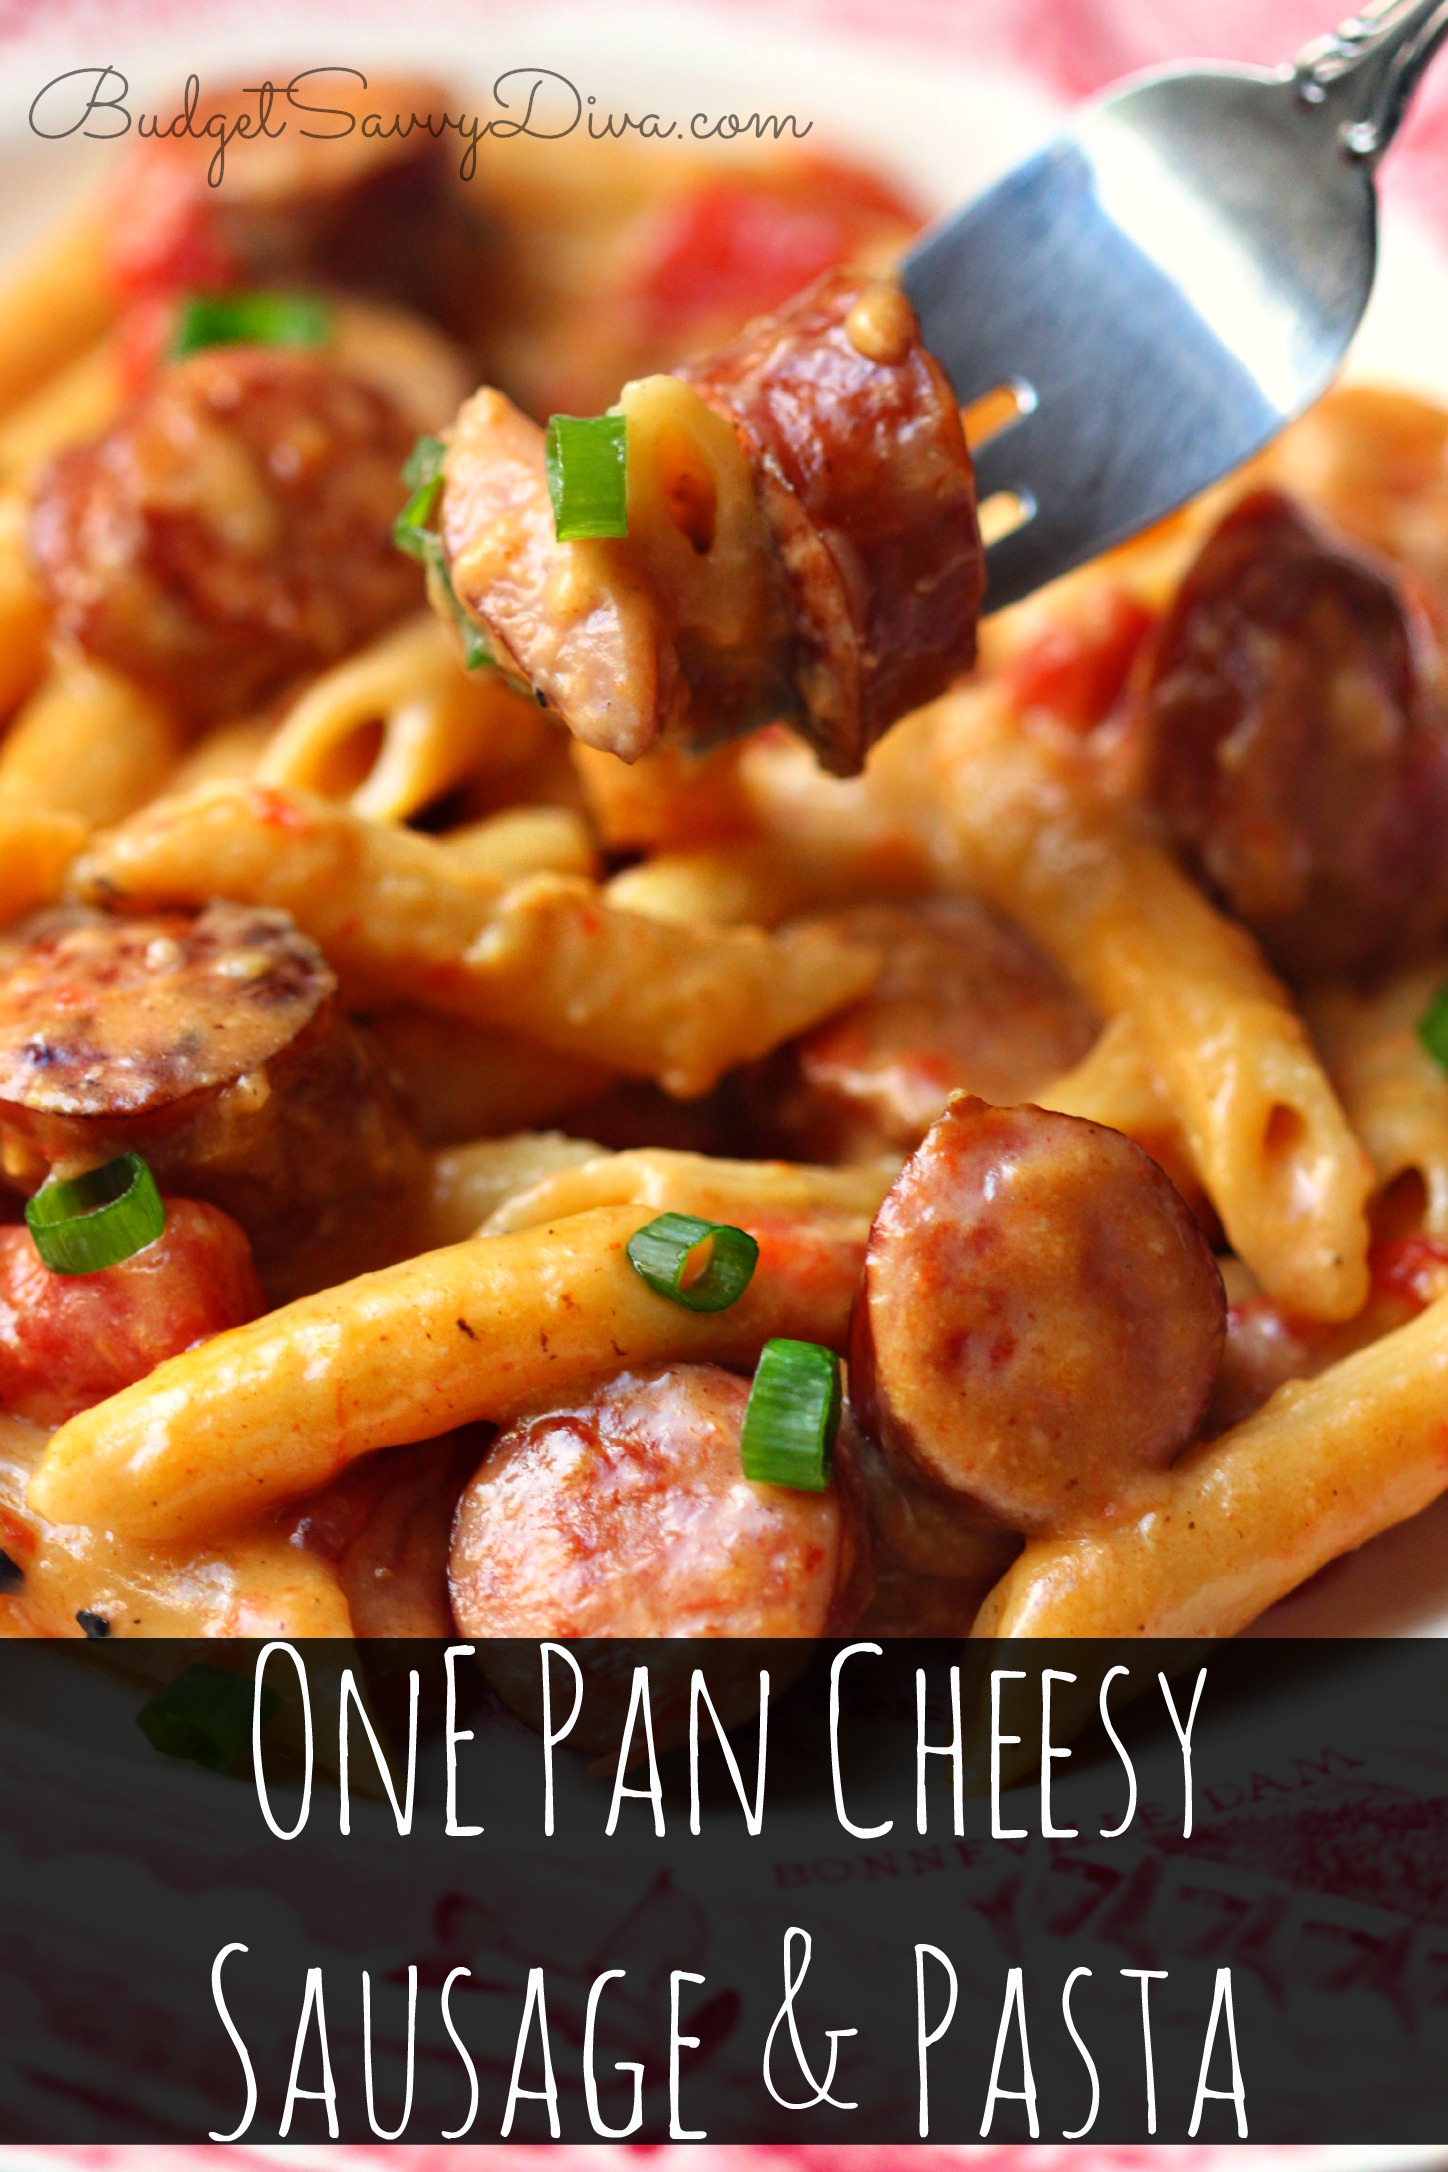 One Pan Cheesy Smoked Sausage & Pasta Recipe | Budget Savvy Diva